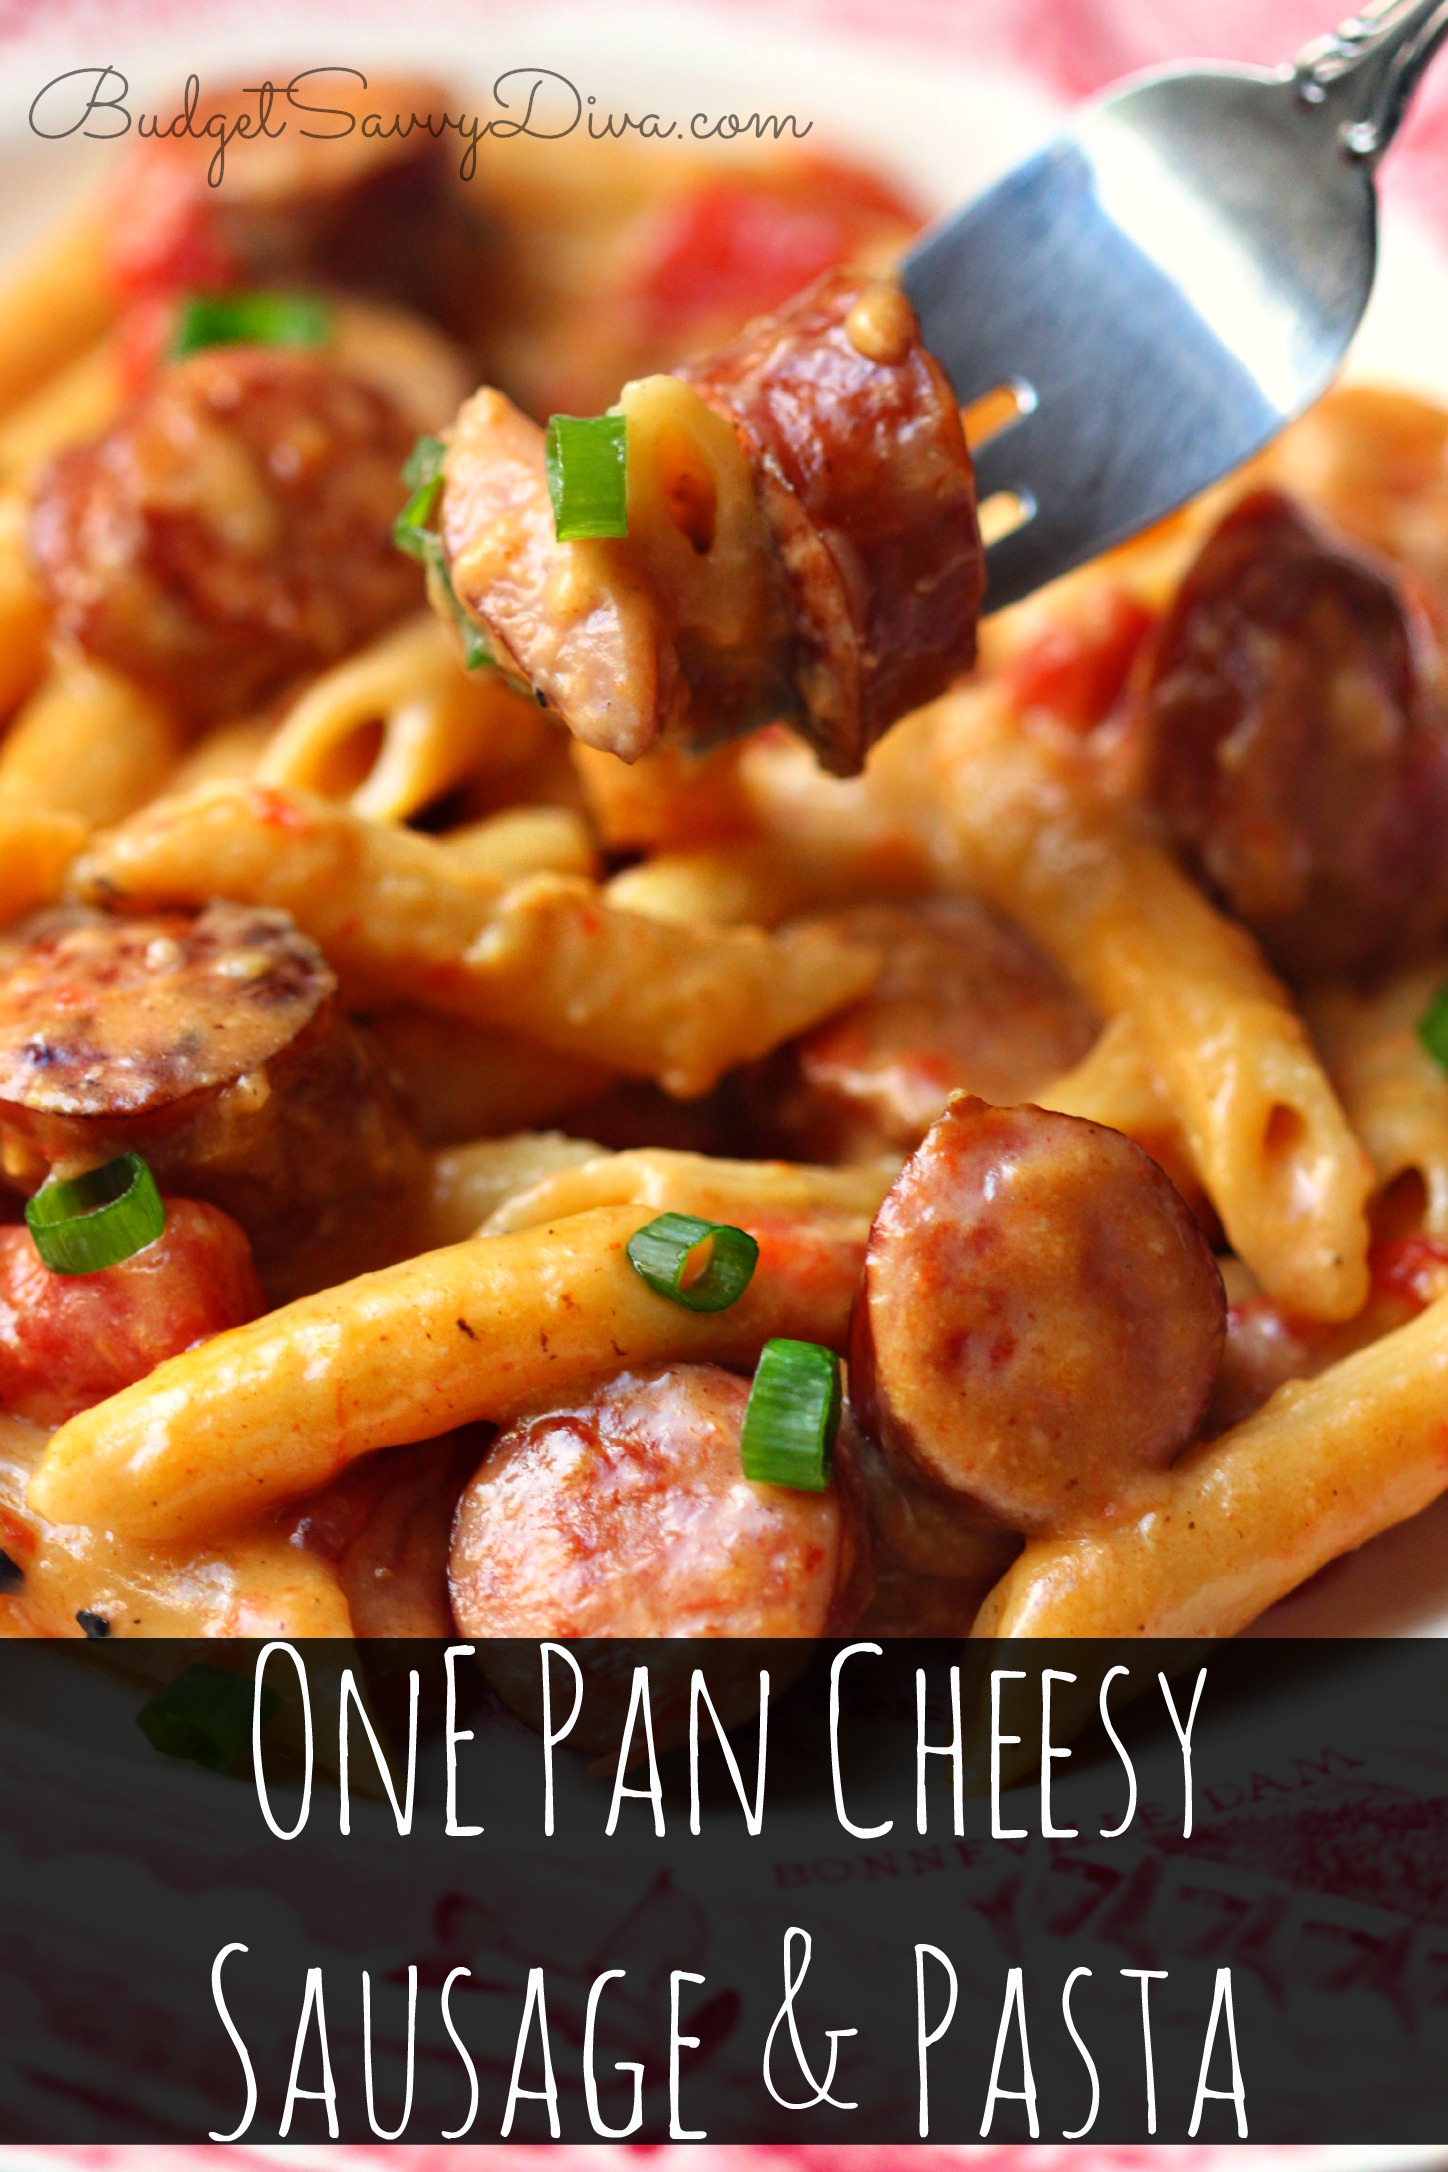 One Pan Cheesy Smoked Sausage & Pasta Recipe | Budget Savvy Diva